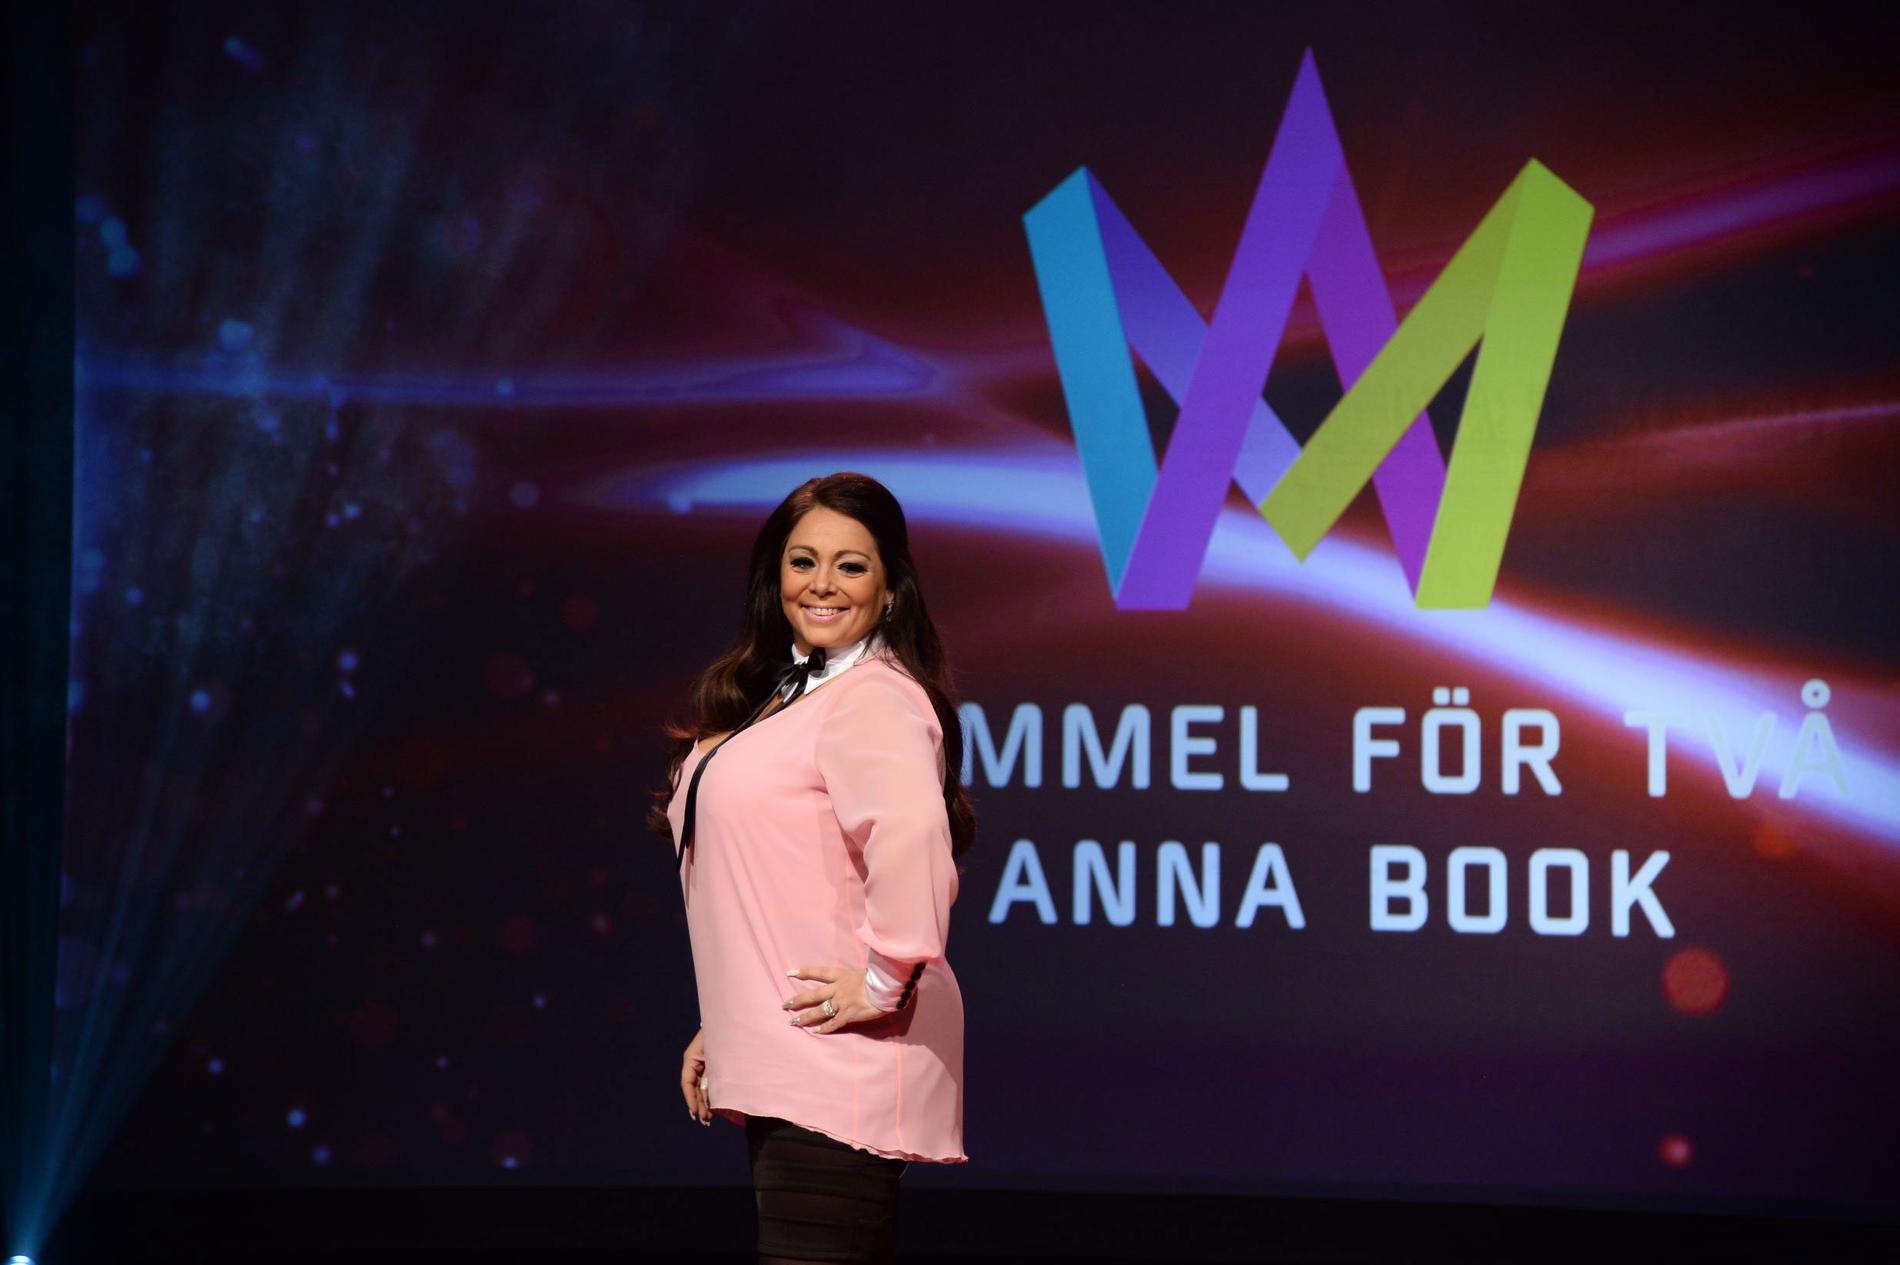 Camilla läckberg har skrivit Anna Books låt ”Himmel för två”.